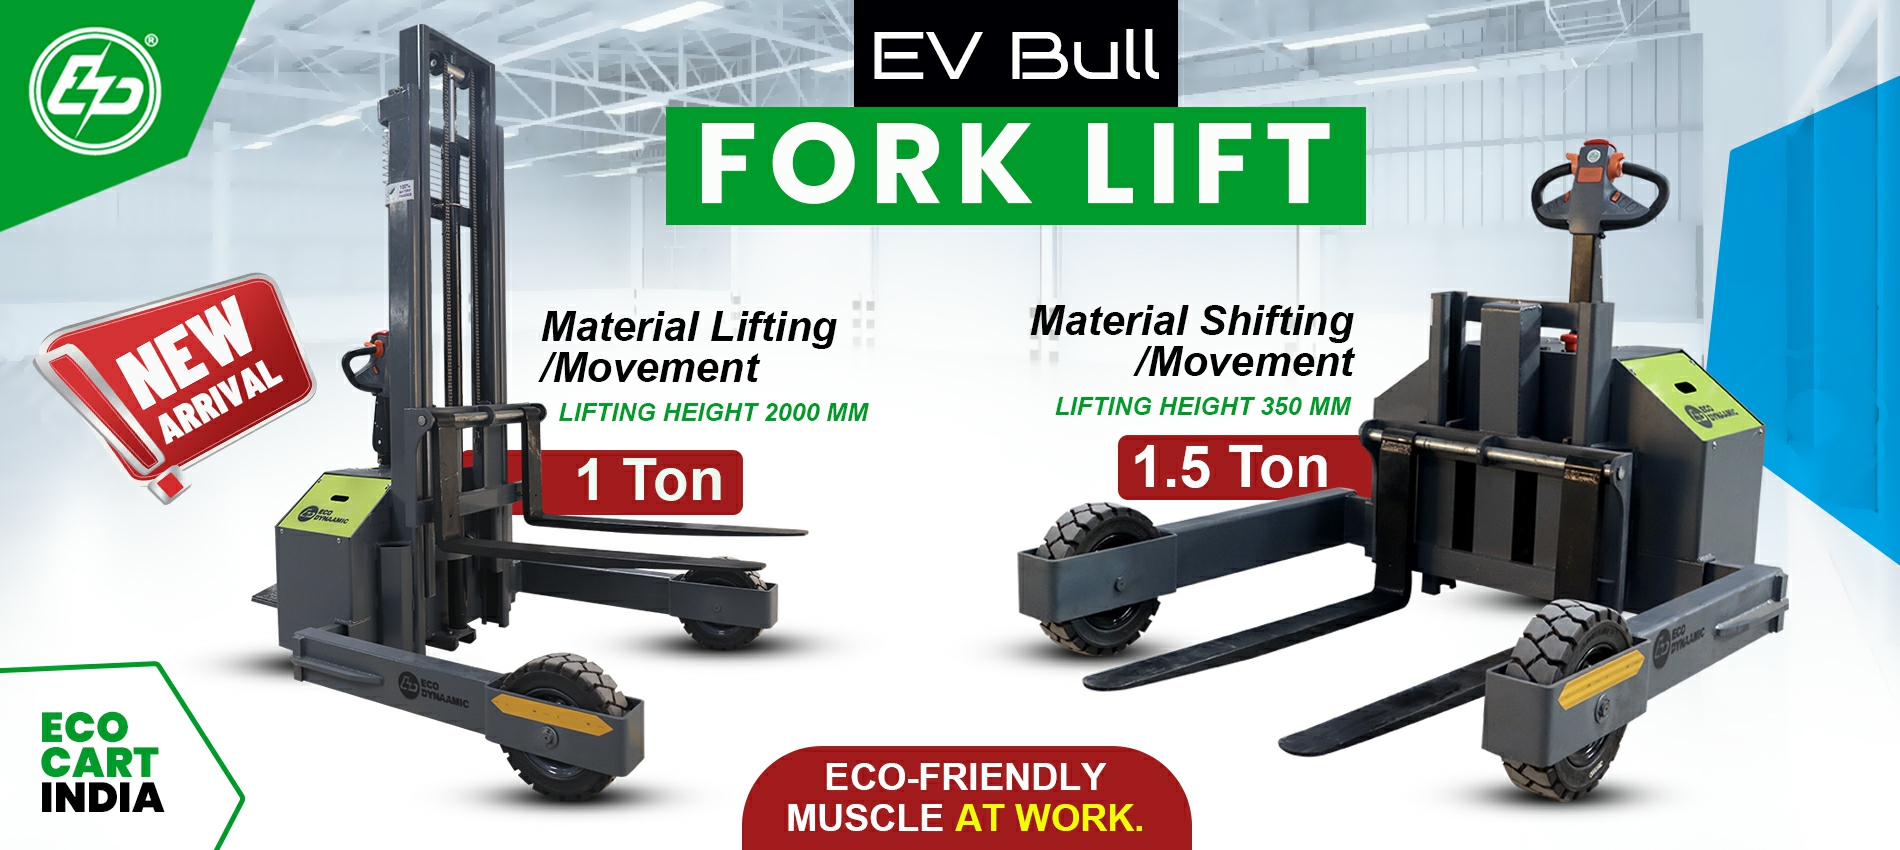 EV Bull Fork Lift